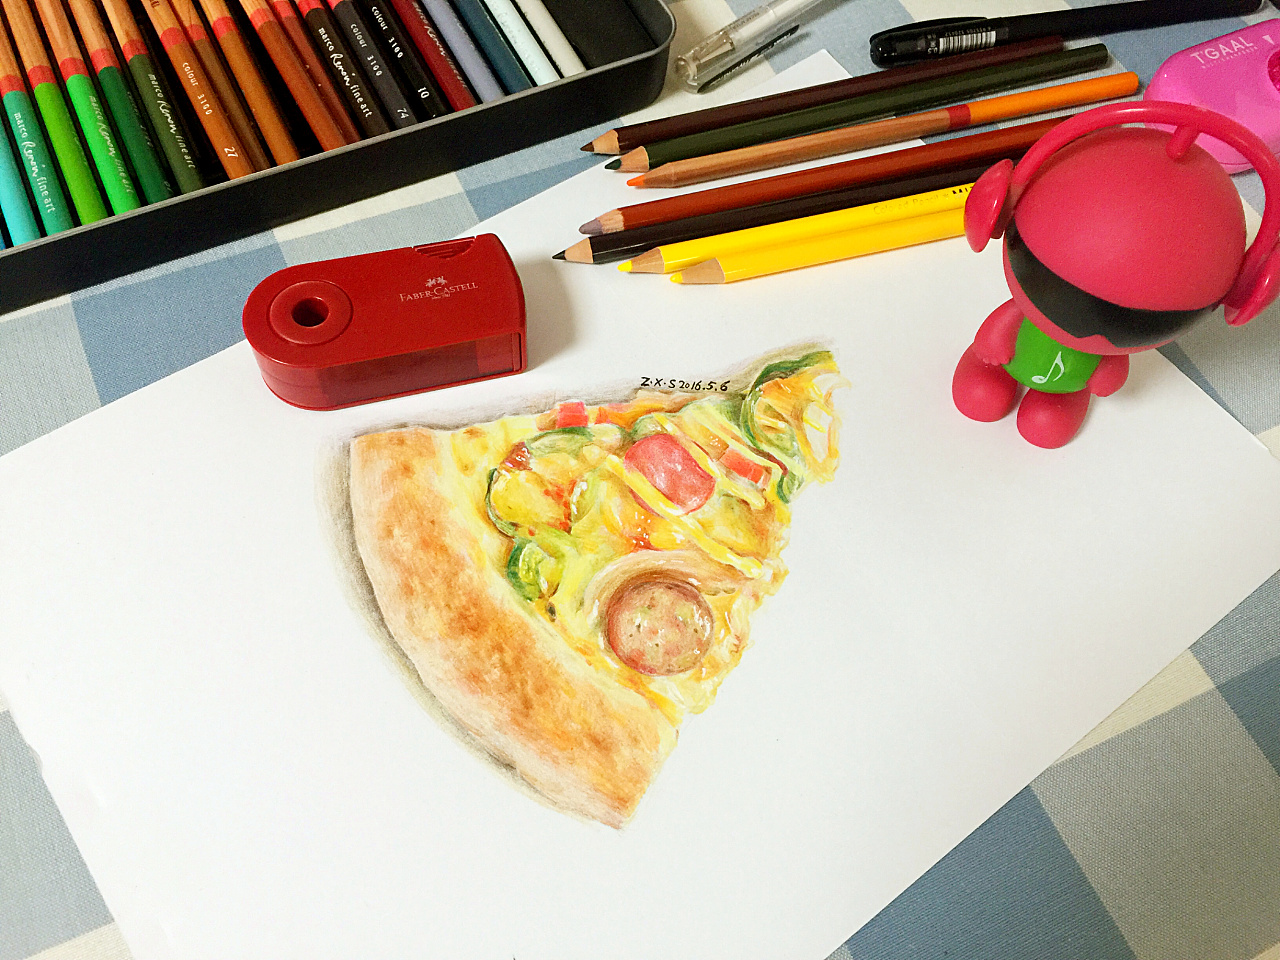 披萨手工绘画创意美术，适合4—7岁 - 堆糖，美图壁纸兴趣社区